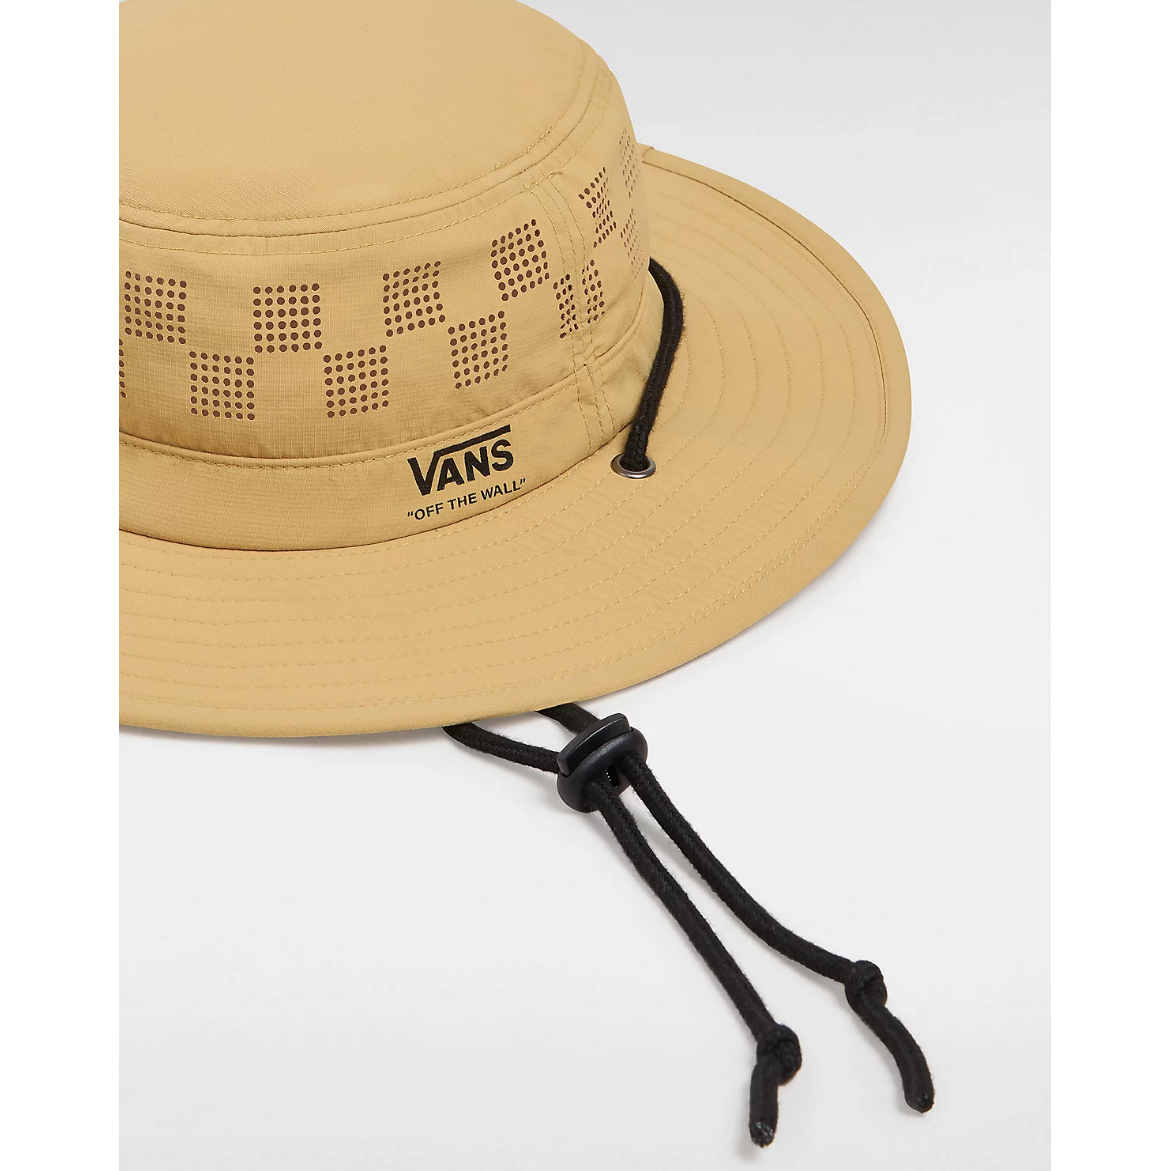 Vans - Outdoors Boonie Bucket Hat - Velocity 21